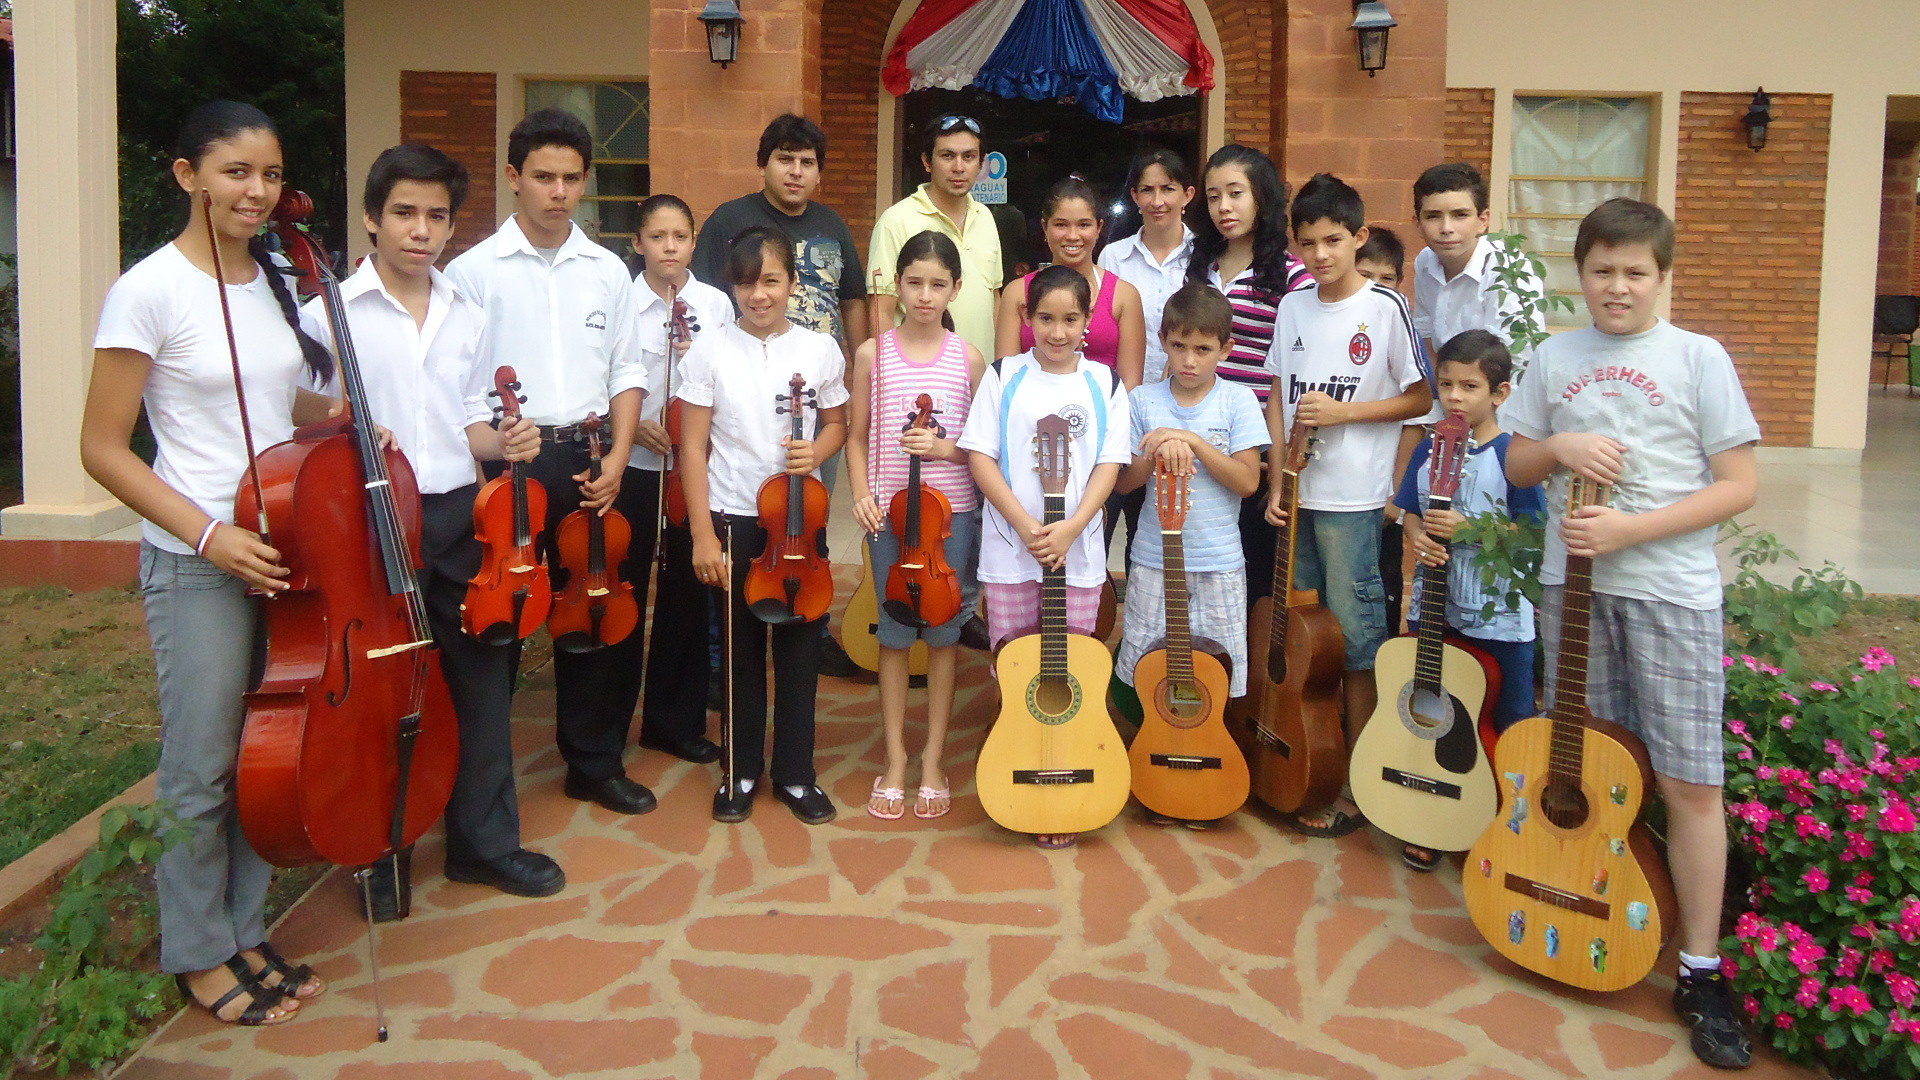 Das Projekt "Sonidos de la Tierra" - "Klänge der Erde" in Paraguay wird von den Schweizer Jesuiten unterstützt.